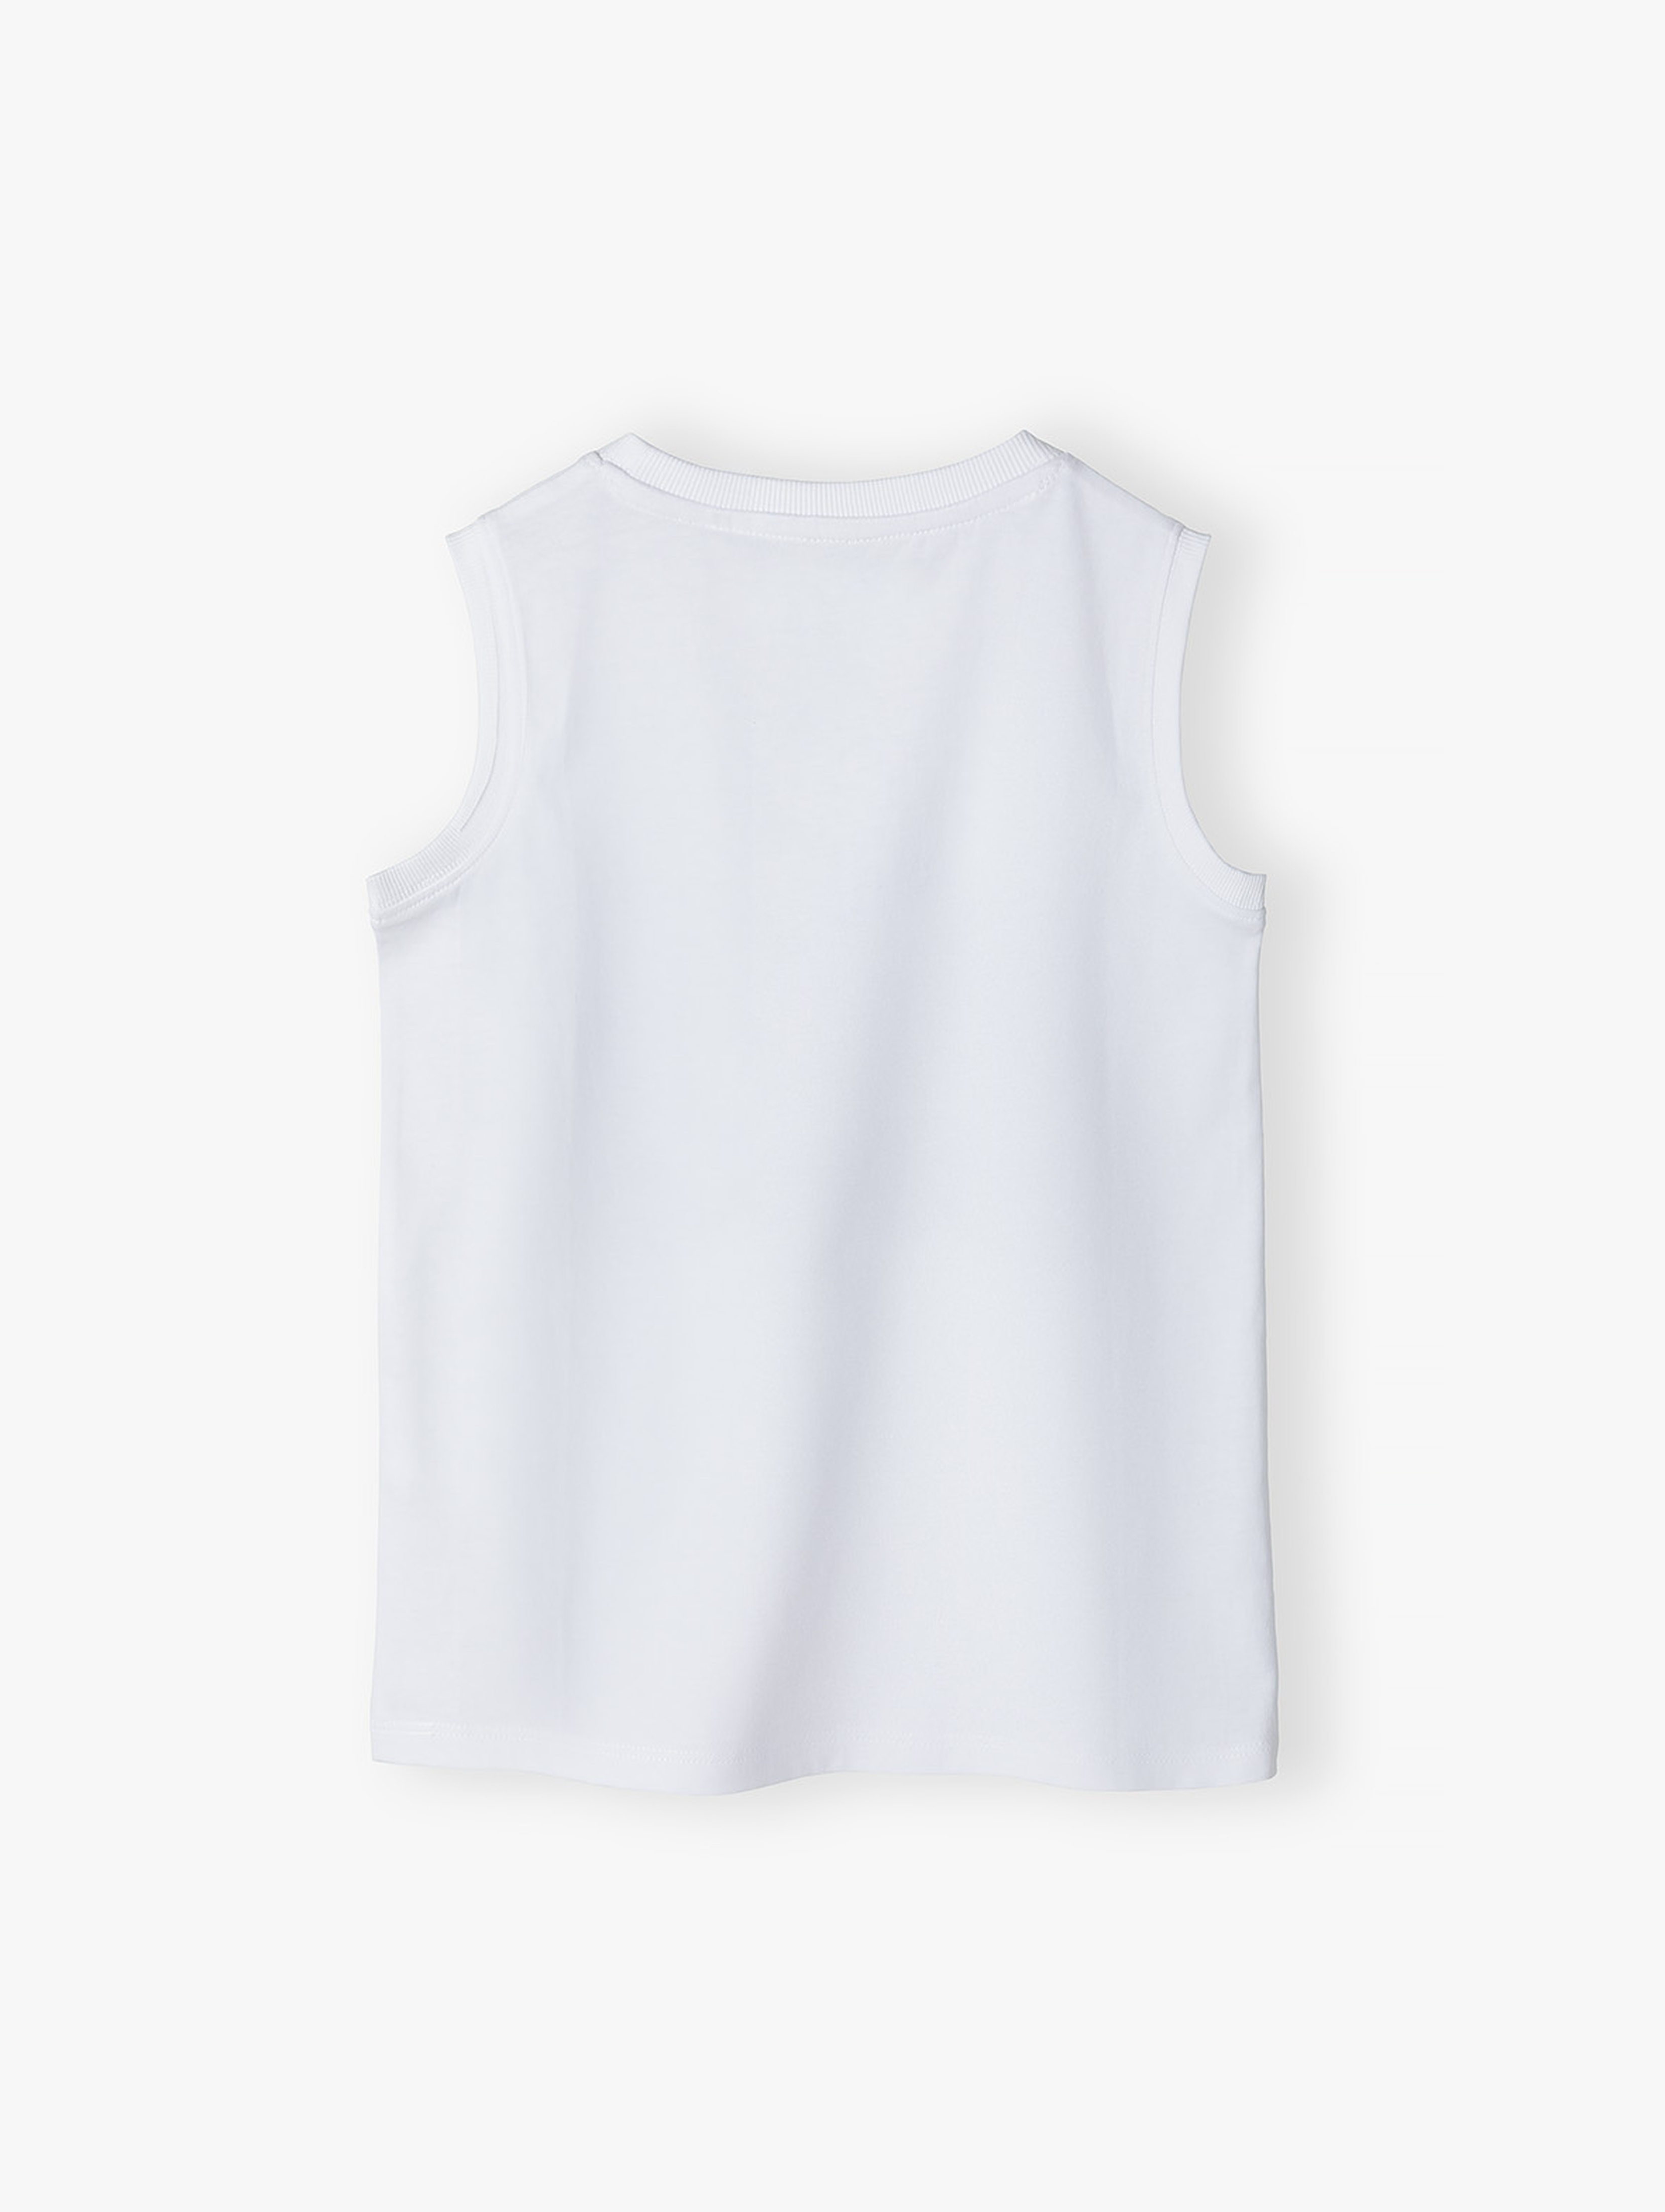 Biała koszulka dla chłopca na lato z bawełny